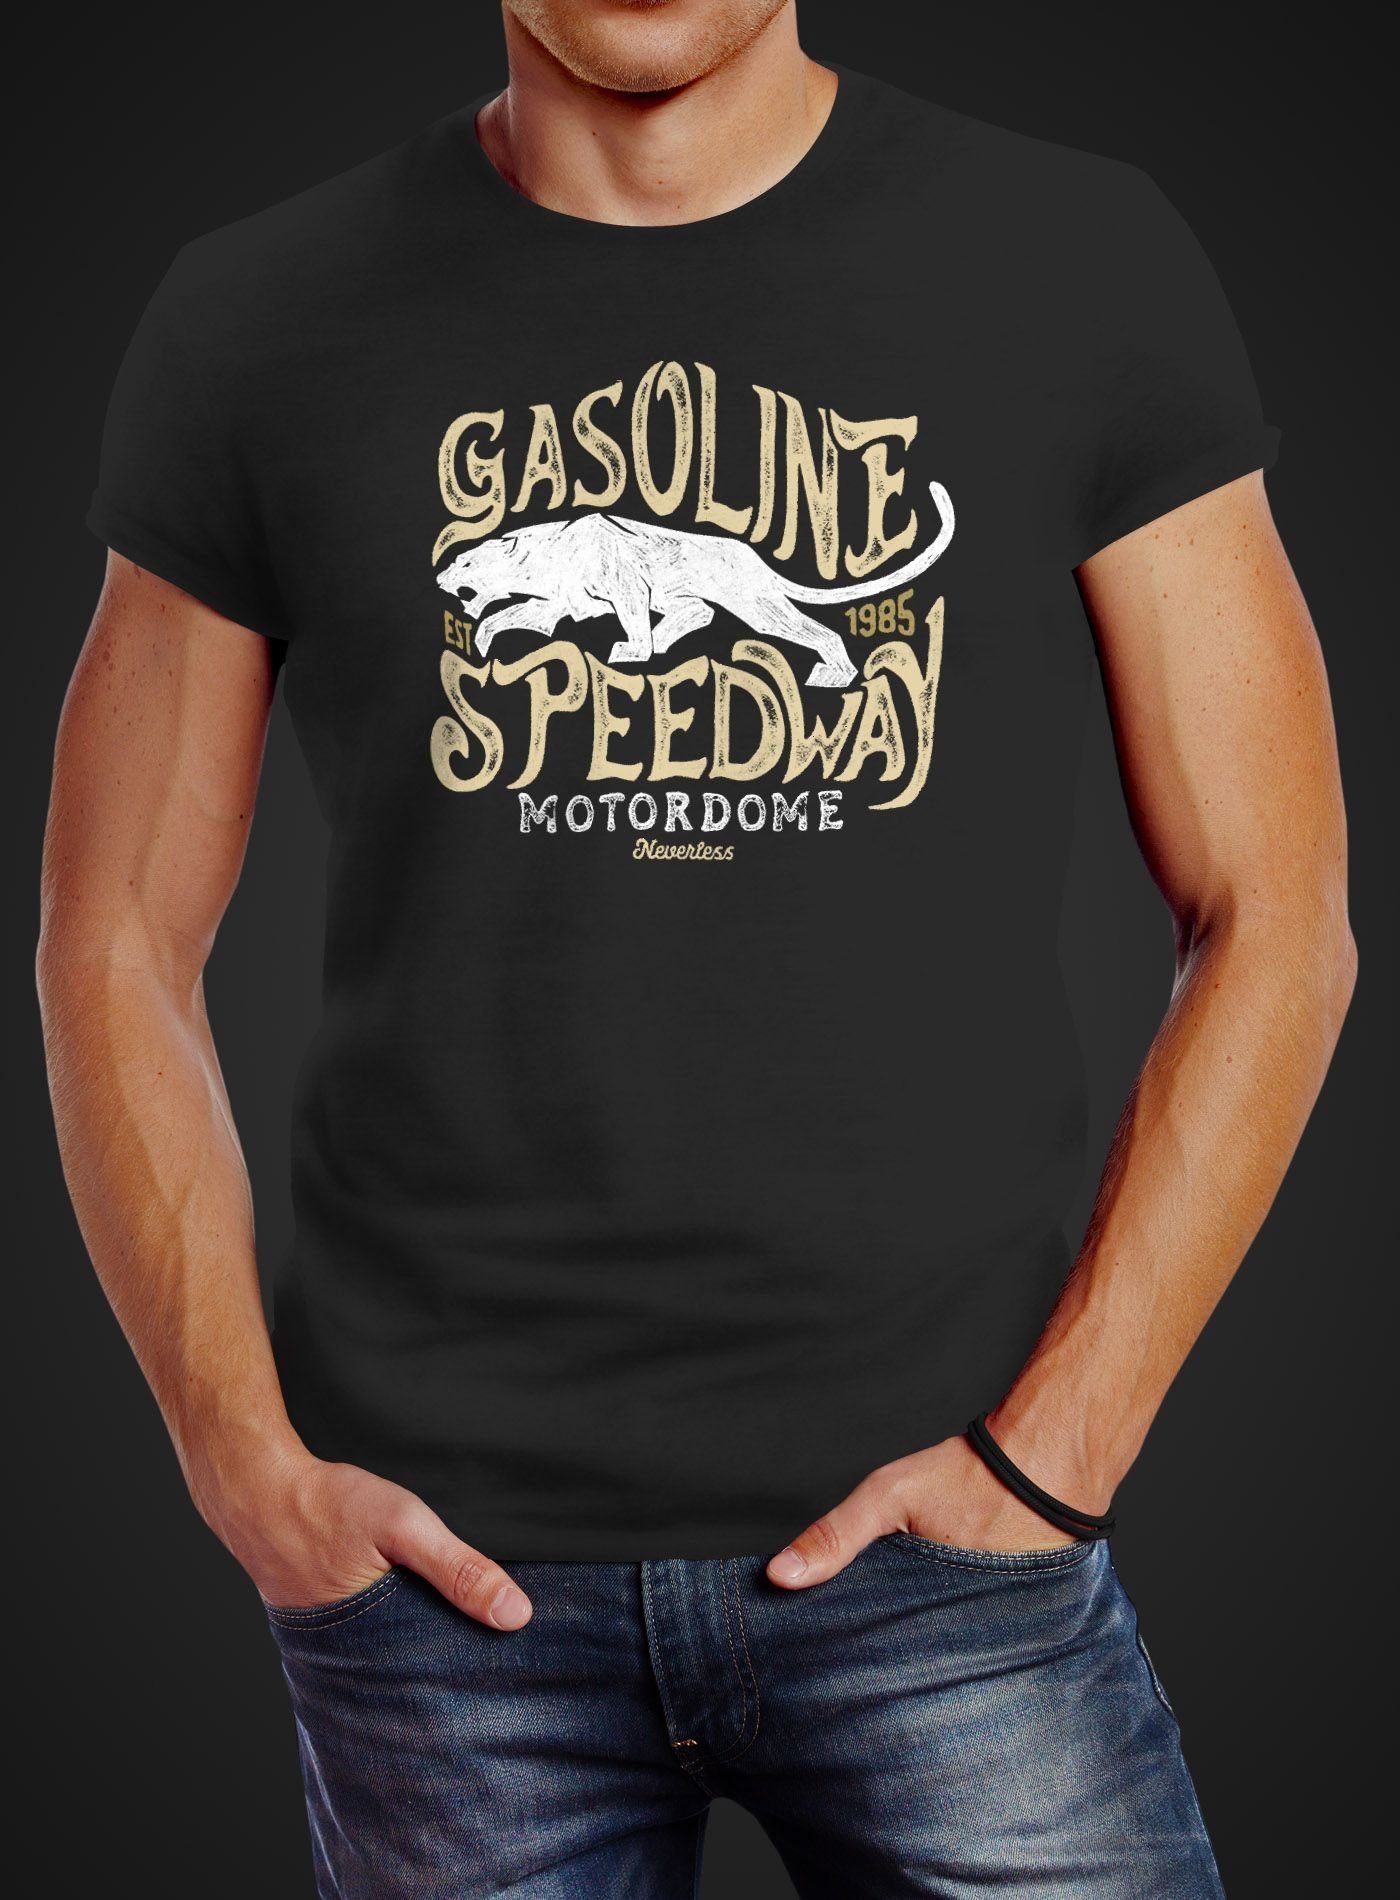 Neverless Print-Shirt Fit Speedway T-Shirt Motiv Print vintage Panther mit Neverless® schwarz Gasoline Slim Printshirt Herren